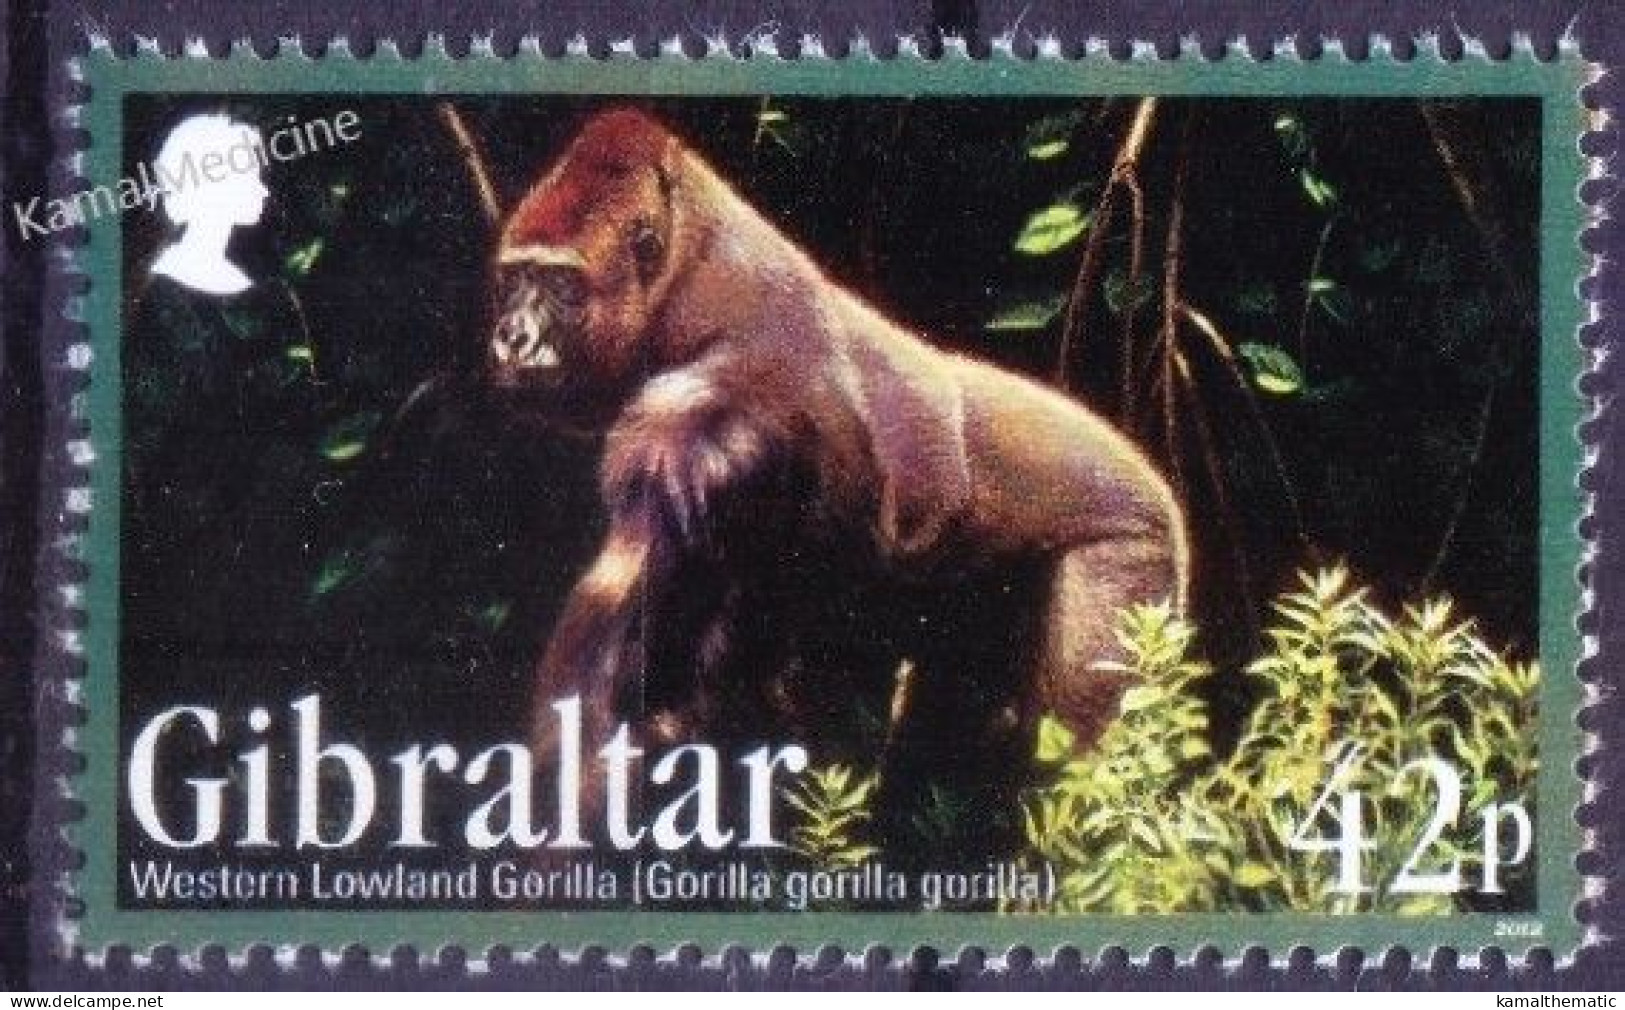 Gibraltar 2012 MNH, Western Lowland Gorilla, Monkeys Wild Animals - Gorilla